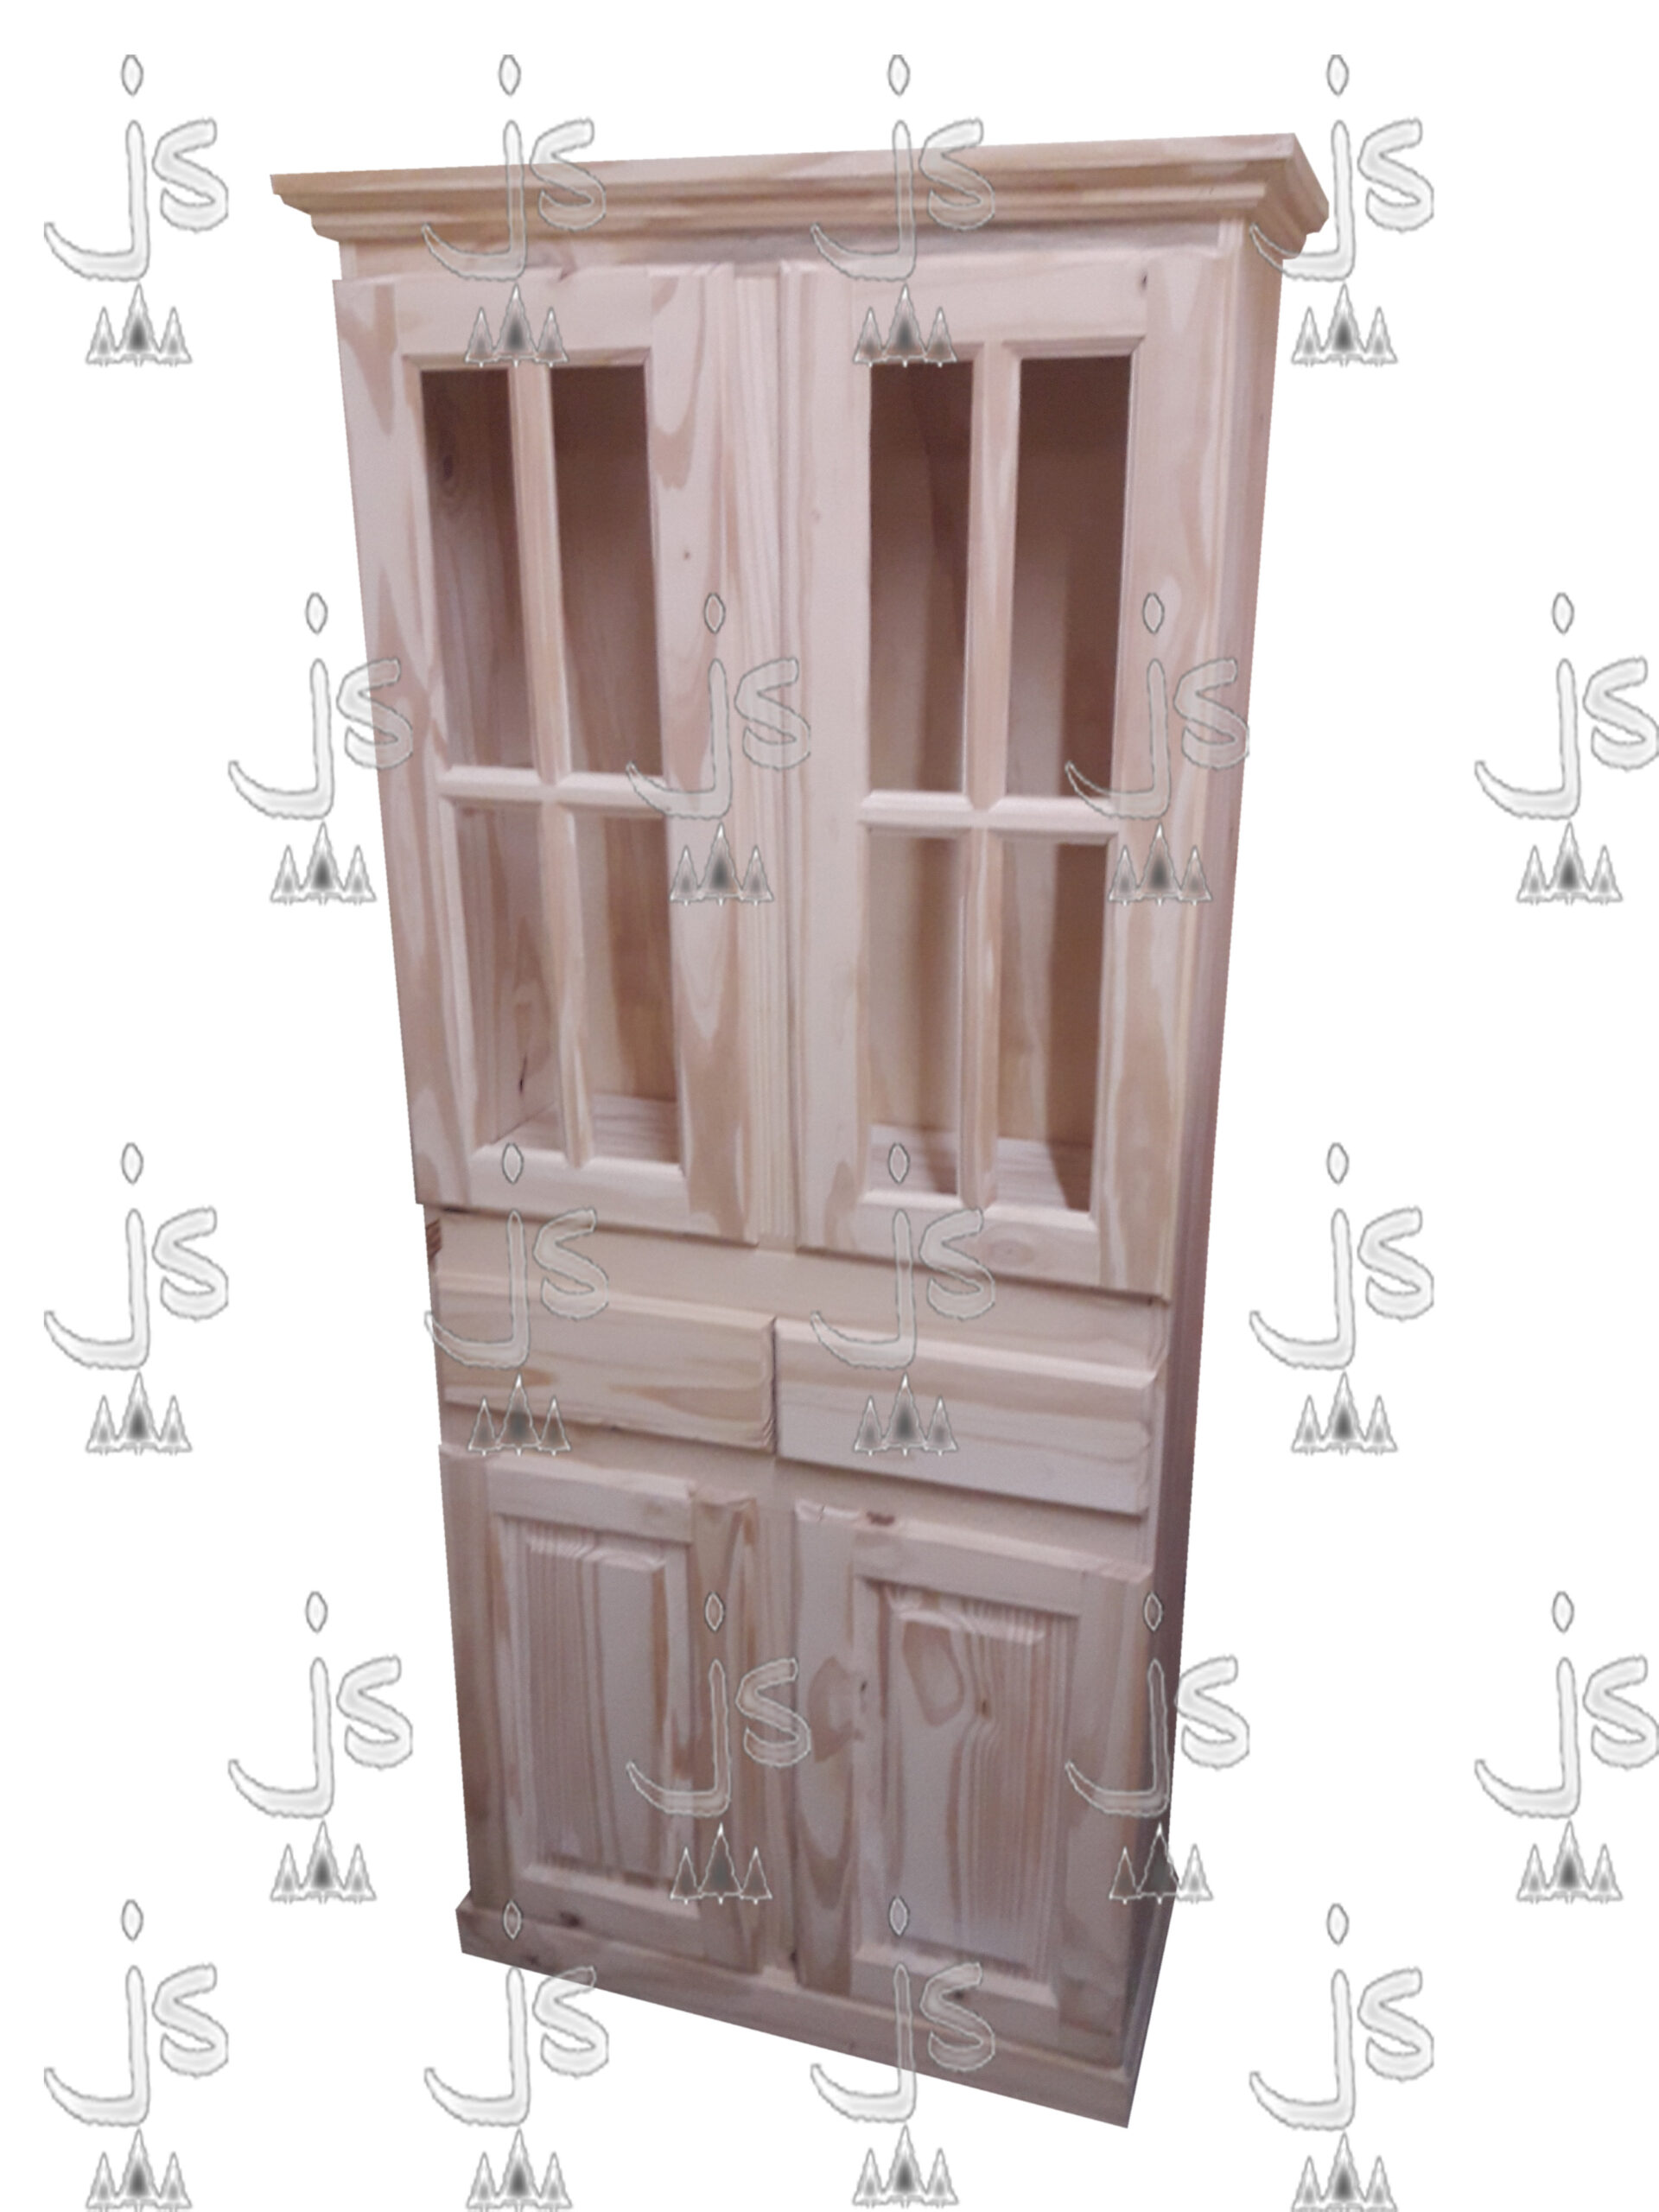 Cristalero vajillero doble puerta vajillera, dos cajones y dos puertas alacena hecho de madera de pino. Fabricado por JS. Fábrica de muebles.